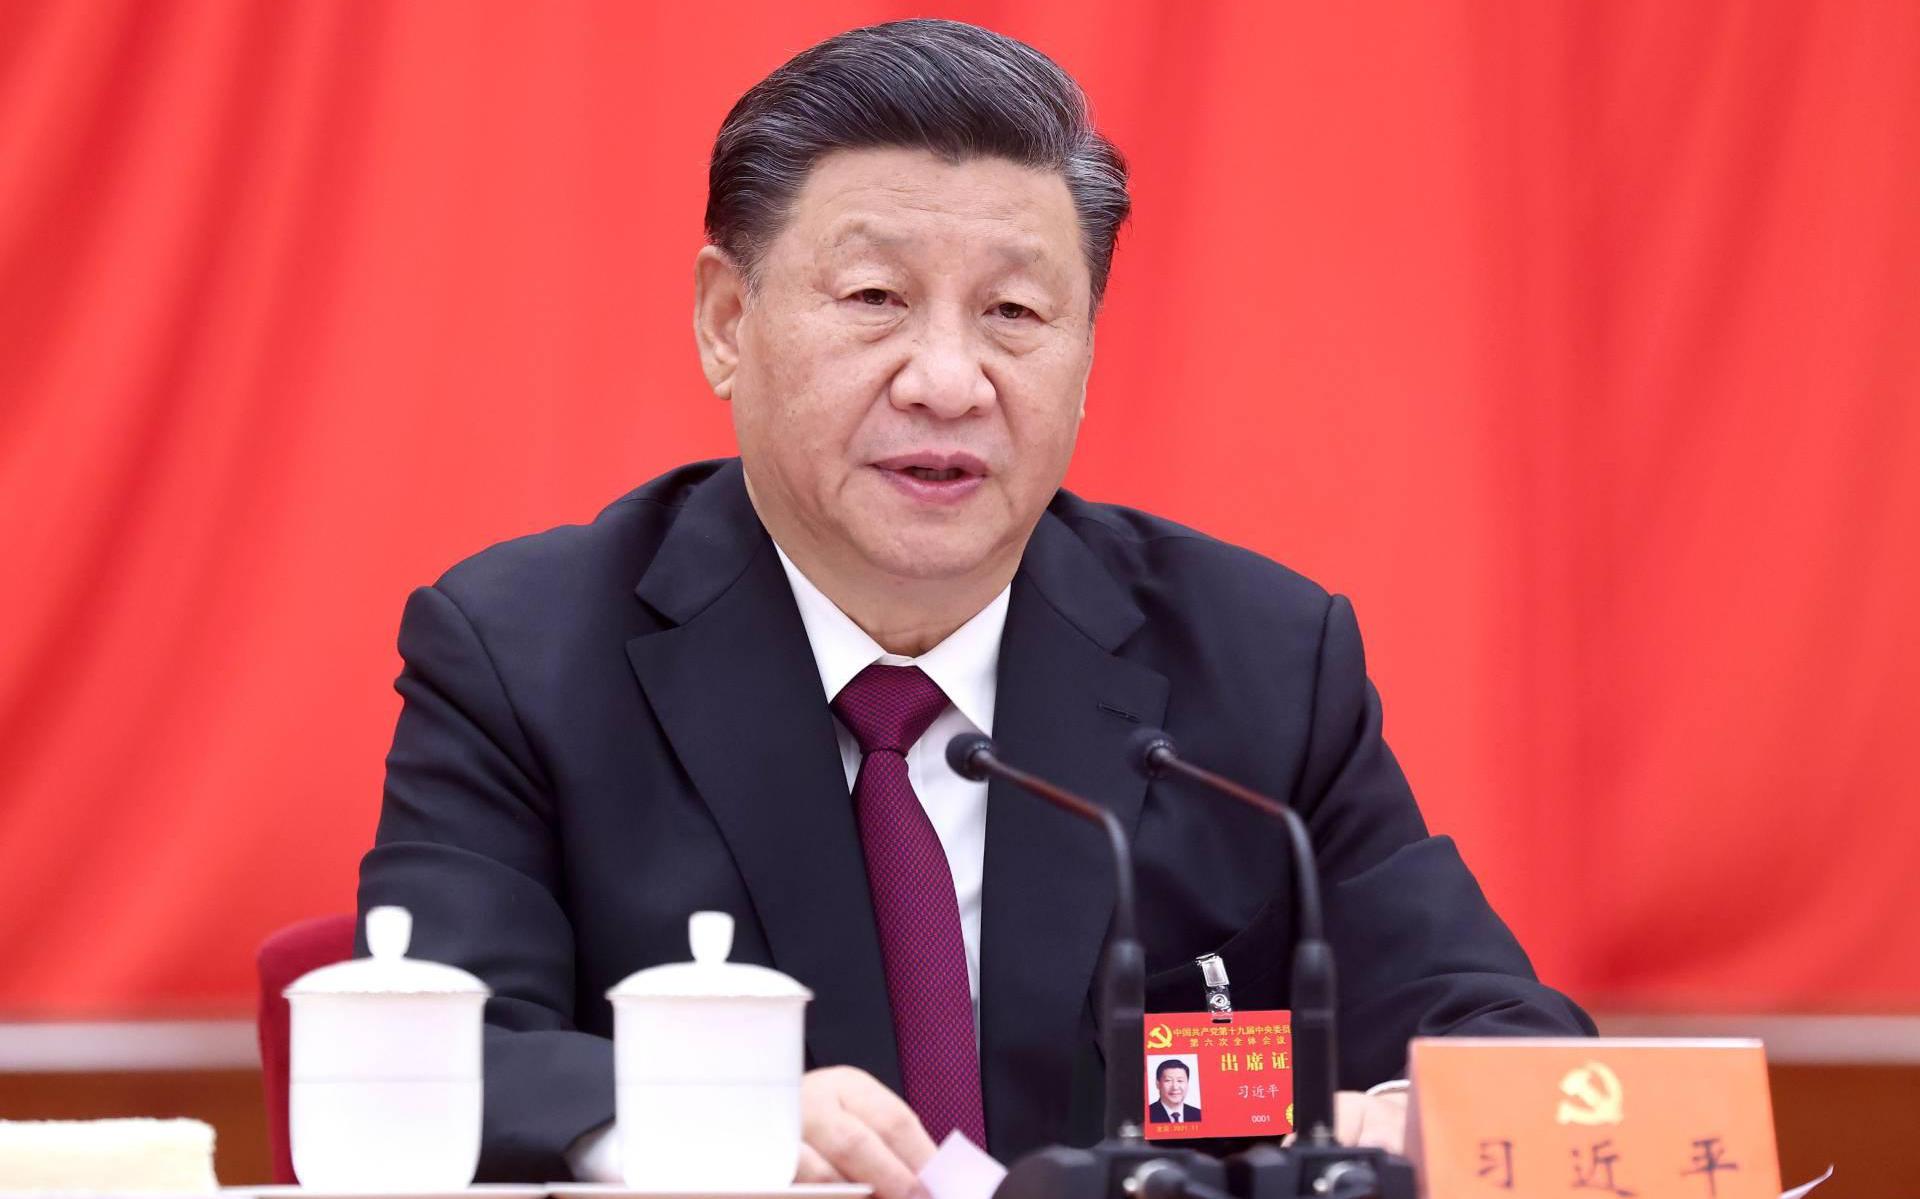 President Xi prijst vooruitgang in Xinjiang tijdens bezoek - Leeuwarder Courant